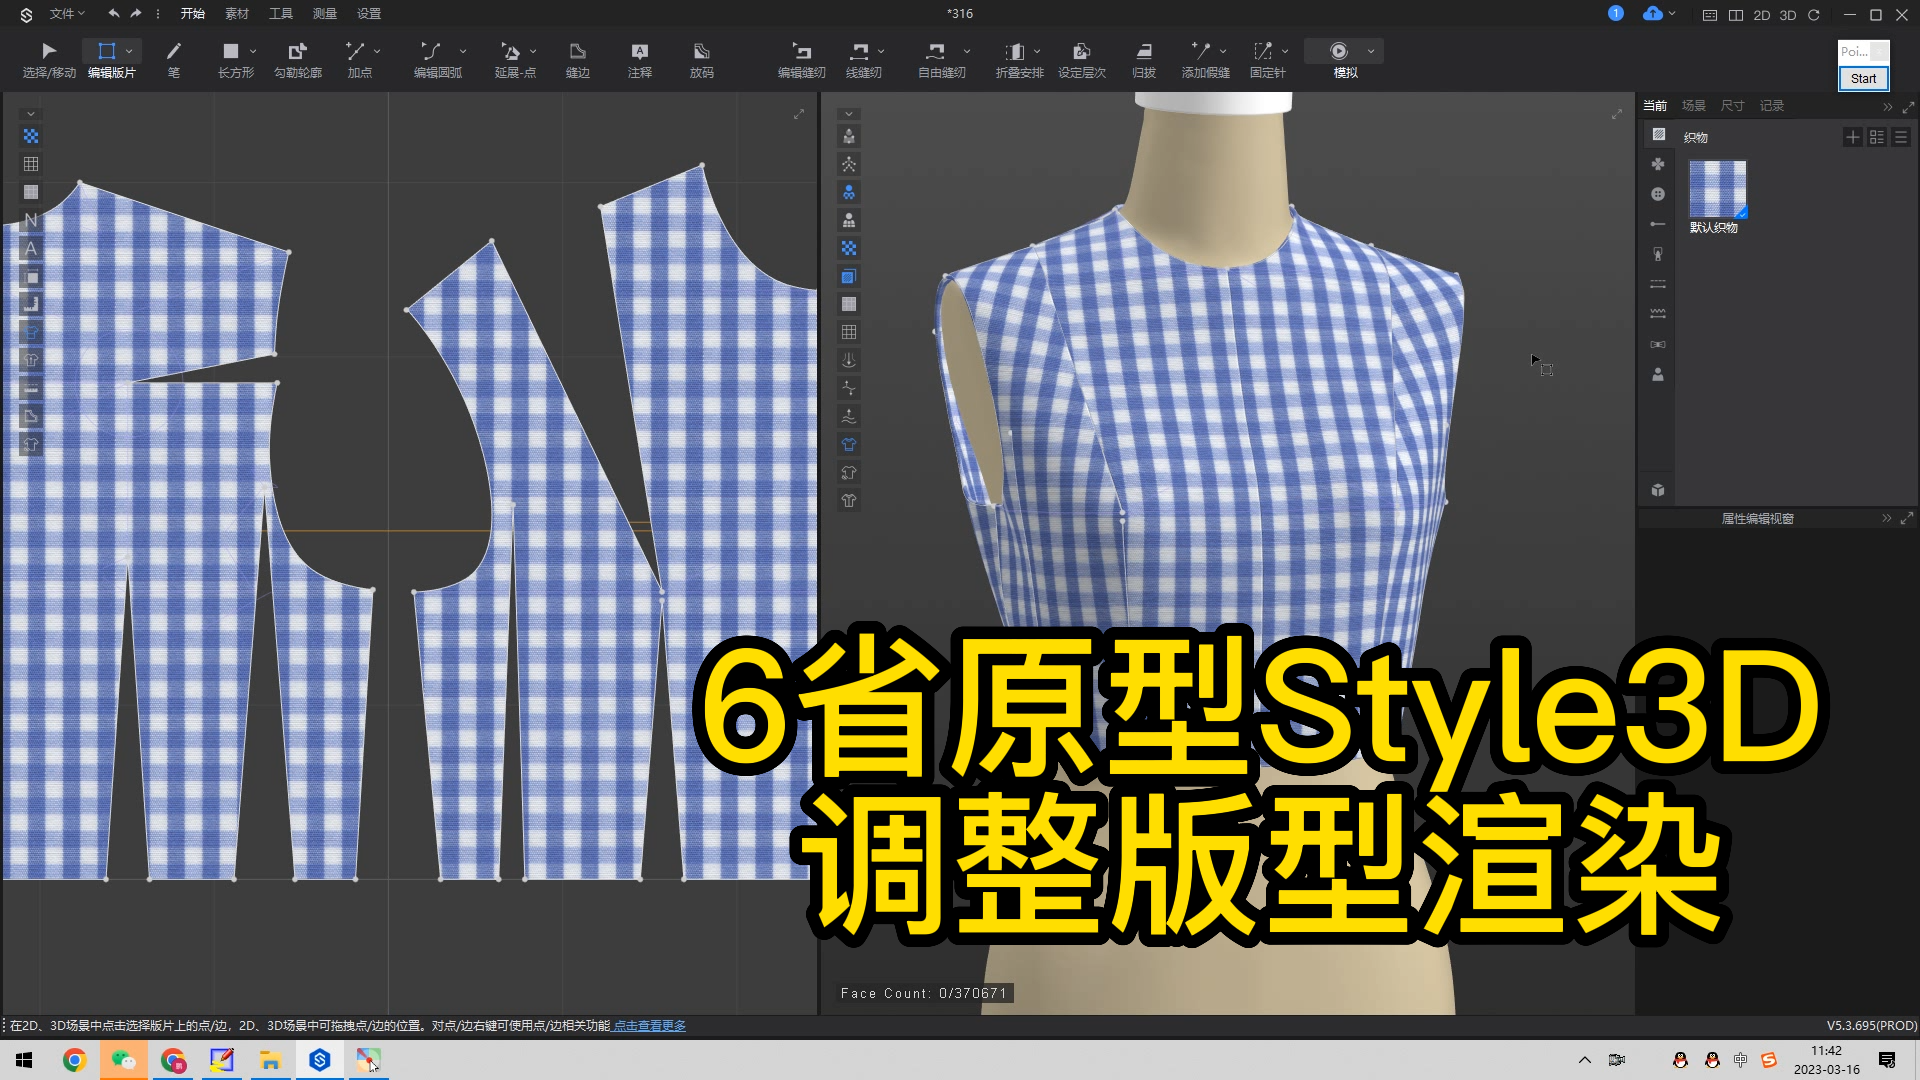 29.6省原型Style3D试衣模拟-调整版型渲染